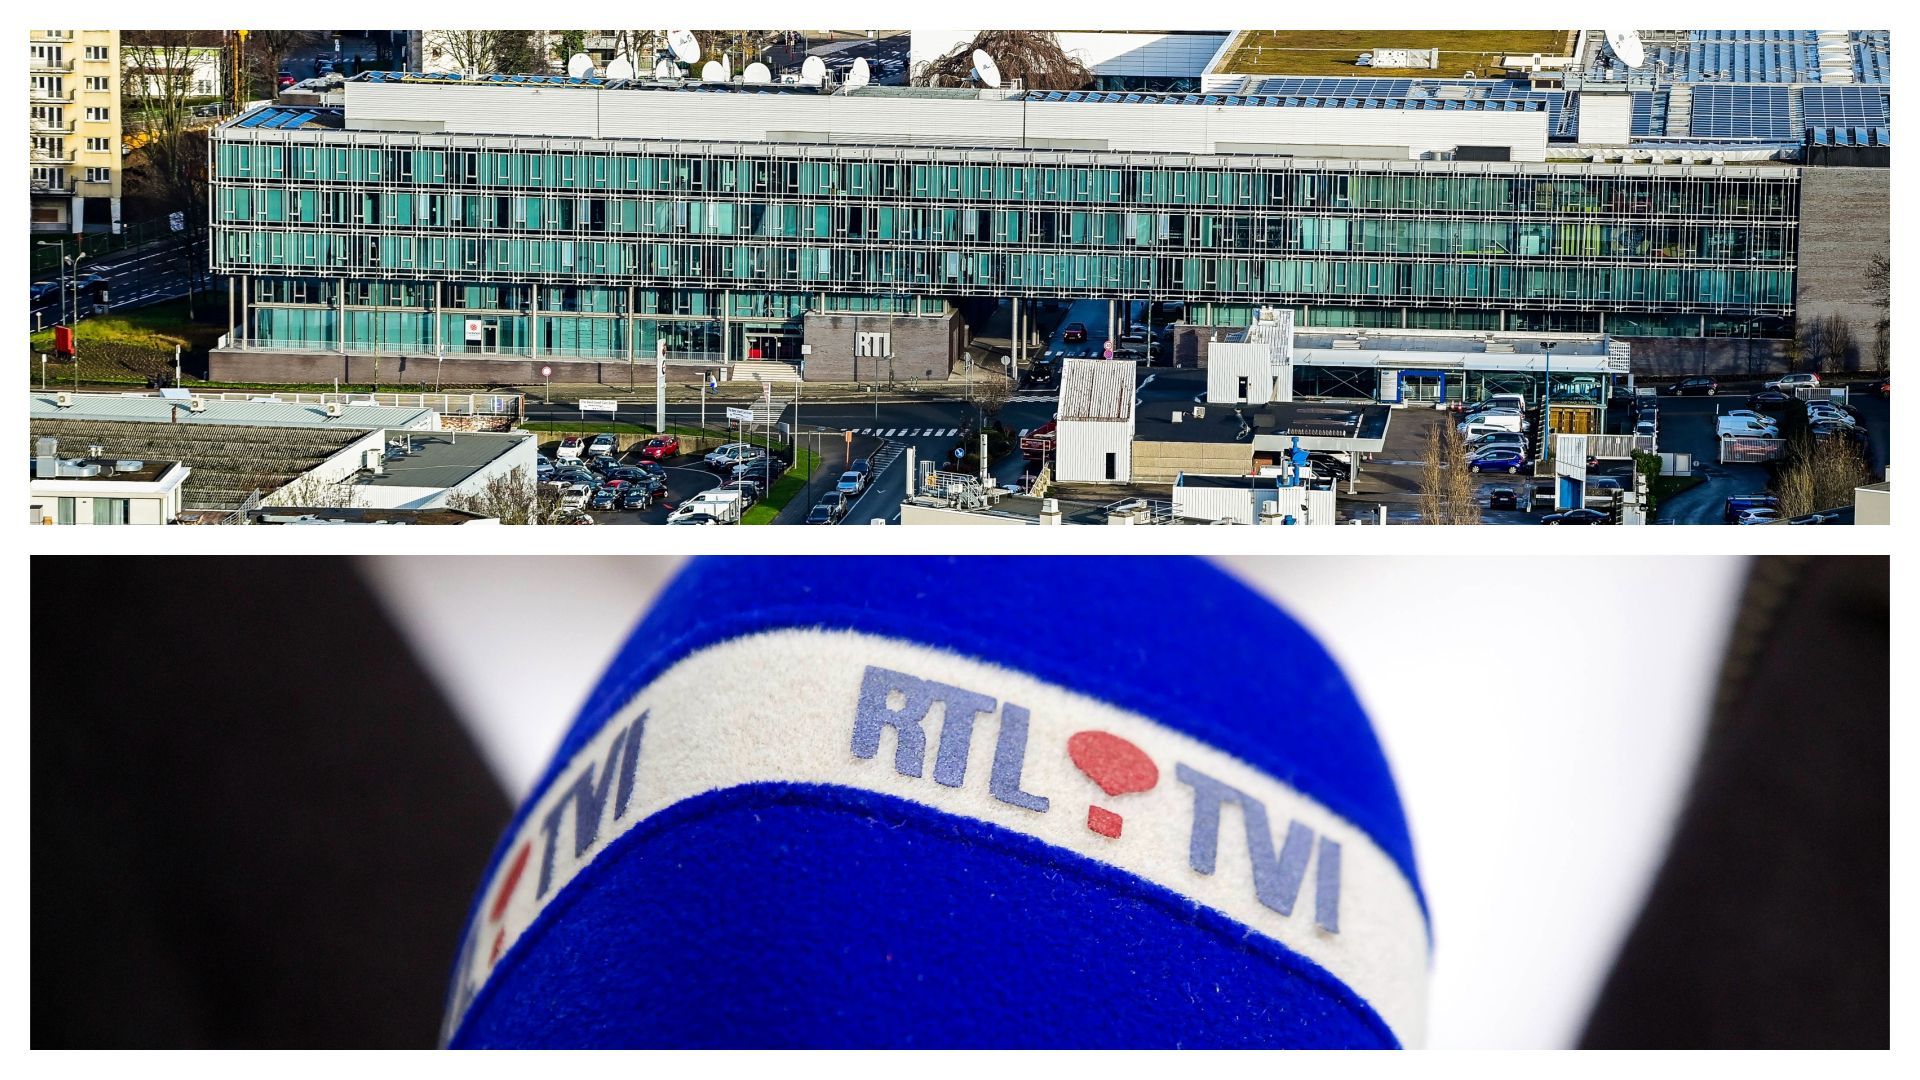 "RTL House", à Bruxelles, et logo d'RTL-TVI sur un micro, en 2013 (images d'illustration)